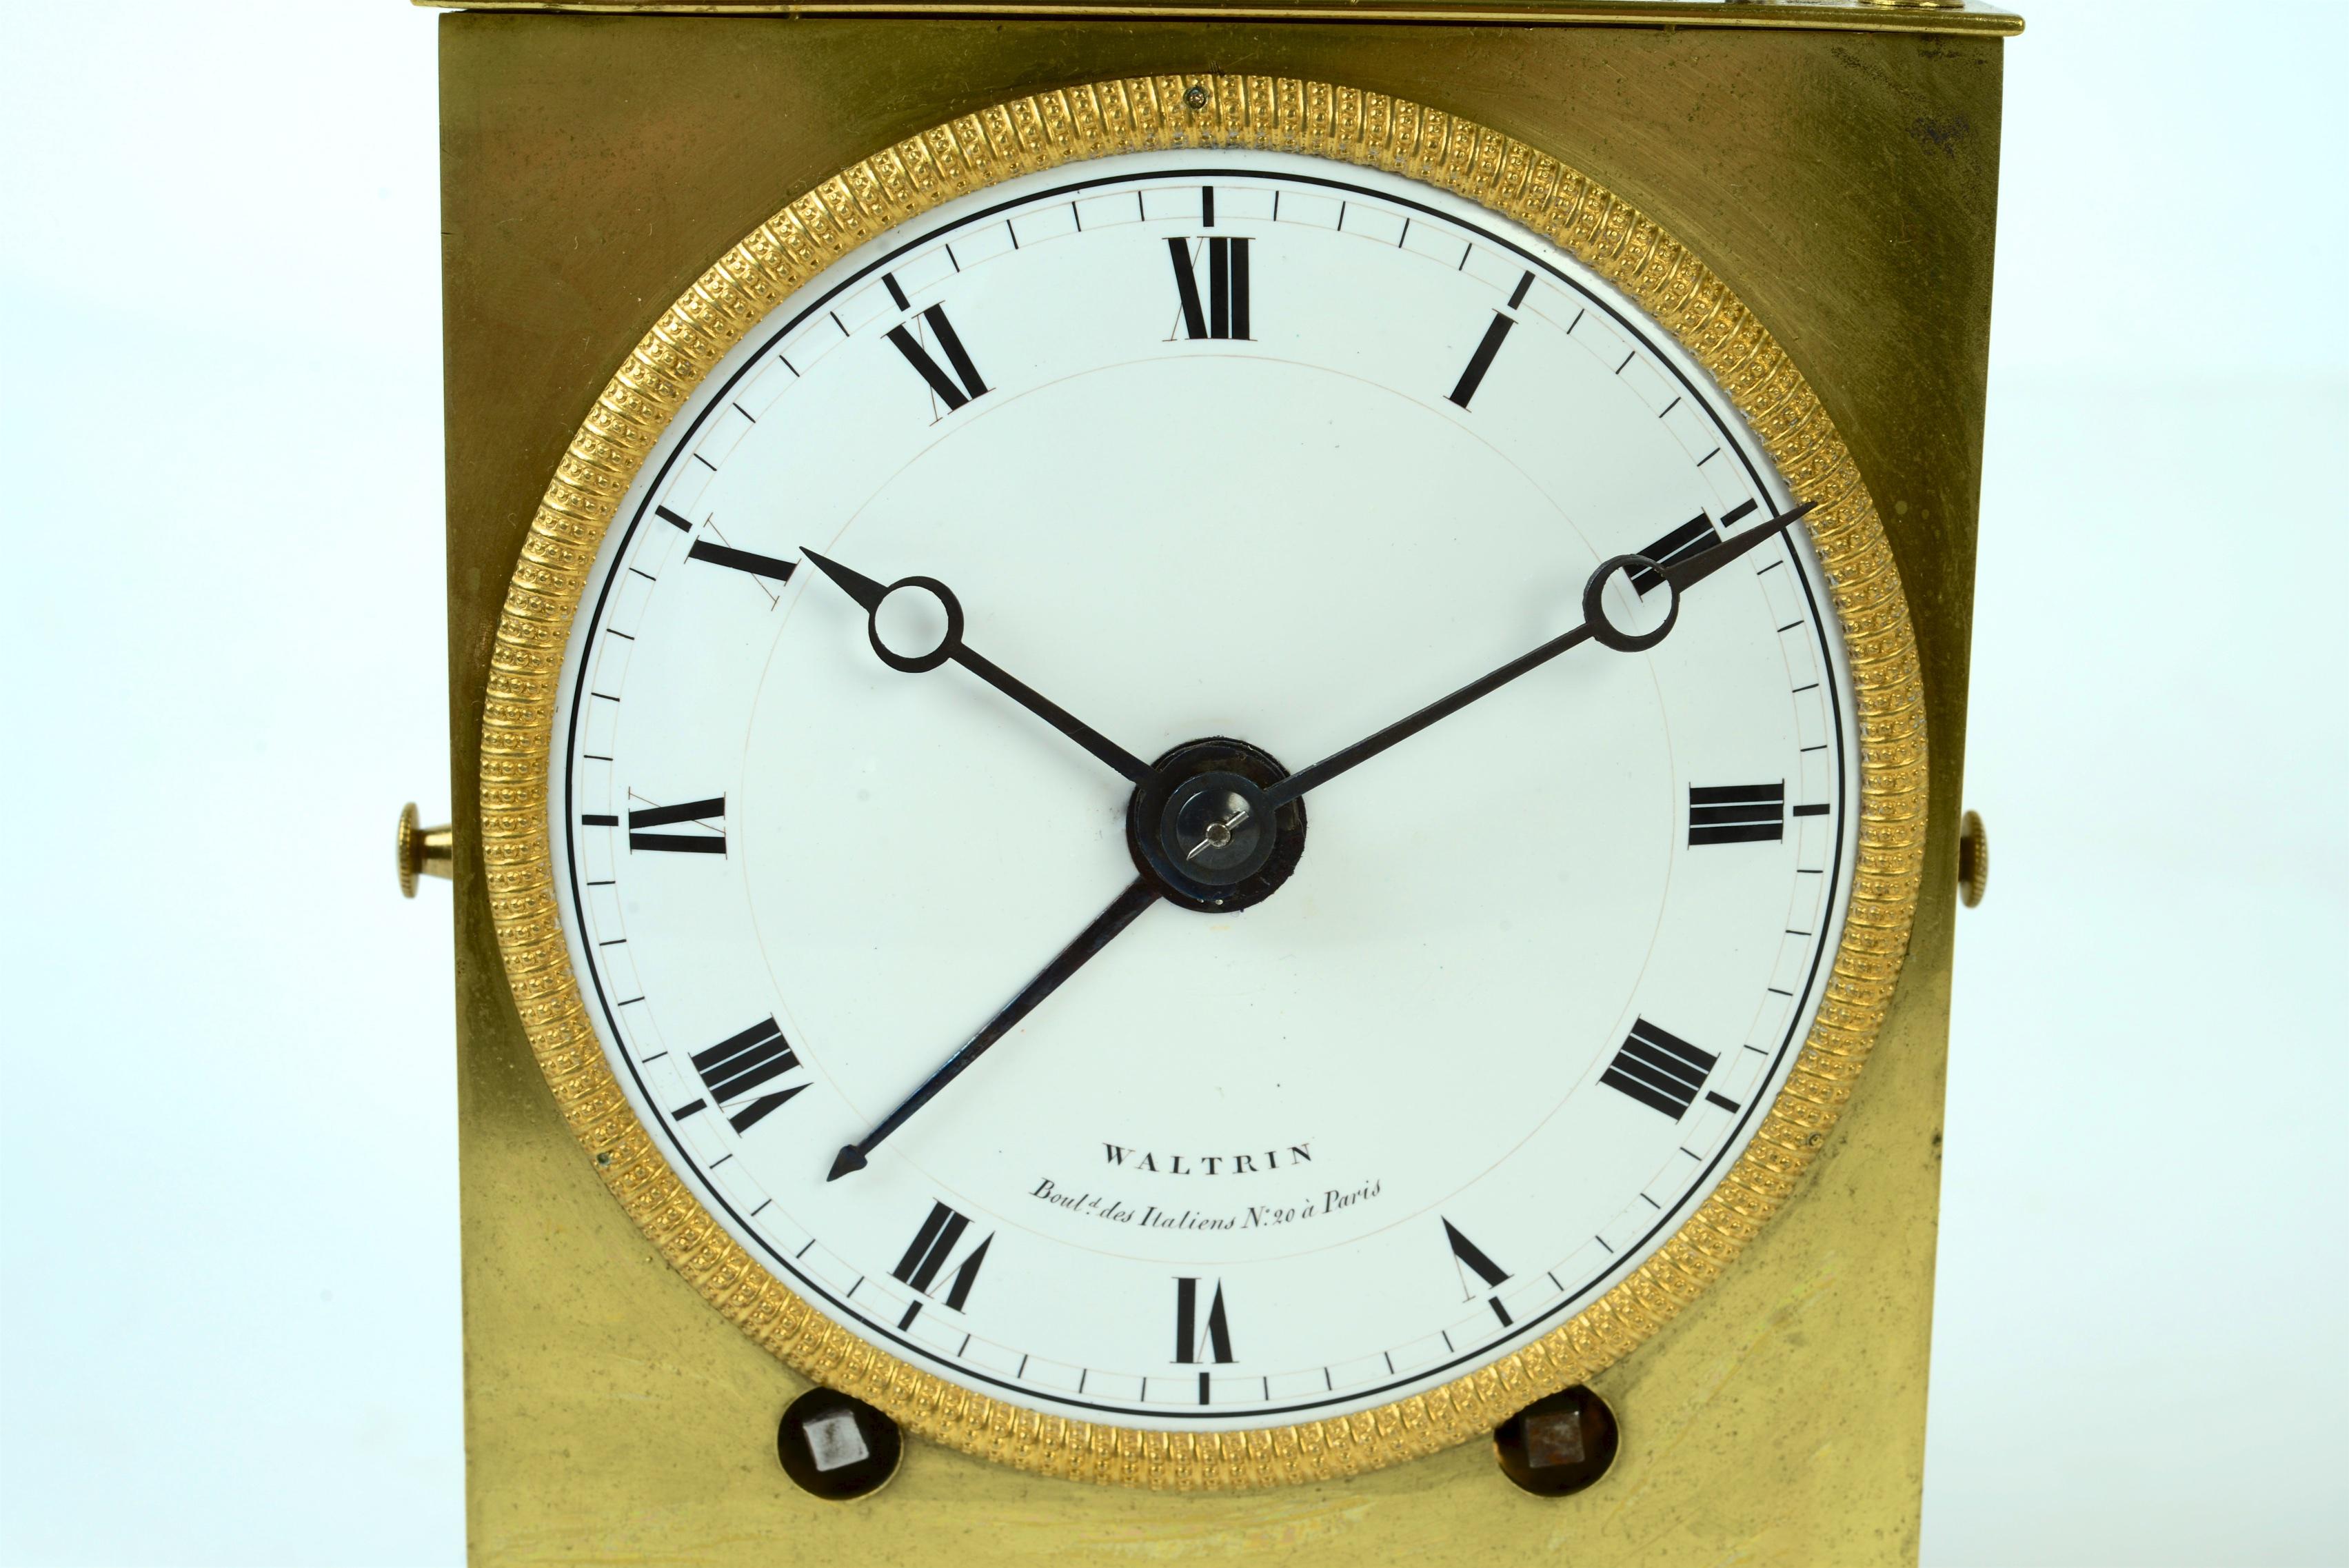 Französische Offiziersuhr Capucine aus dem frühen 19. Jahrhundert, um 1800 von Waltrin. Diese Uhren haben ein Morbier-Uhrwerk. Sie schlagen einmal zur halben Stunde und zur vollen Stunde sowie 2 Minuten nach der vollen Stunde erneut an. Wenn man die